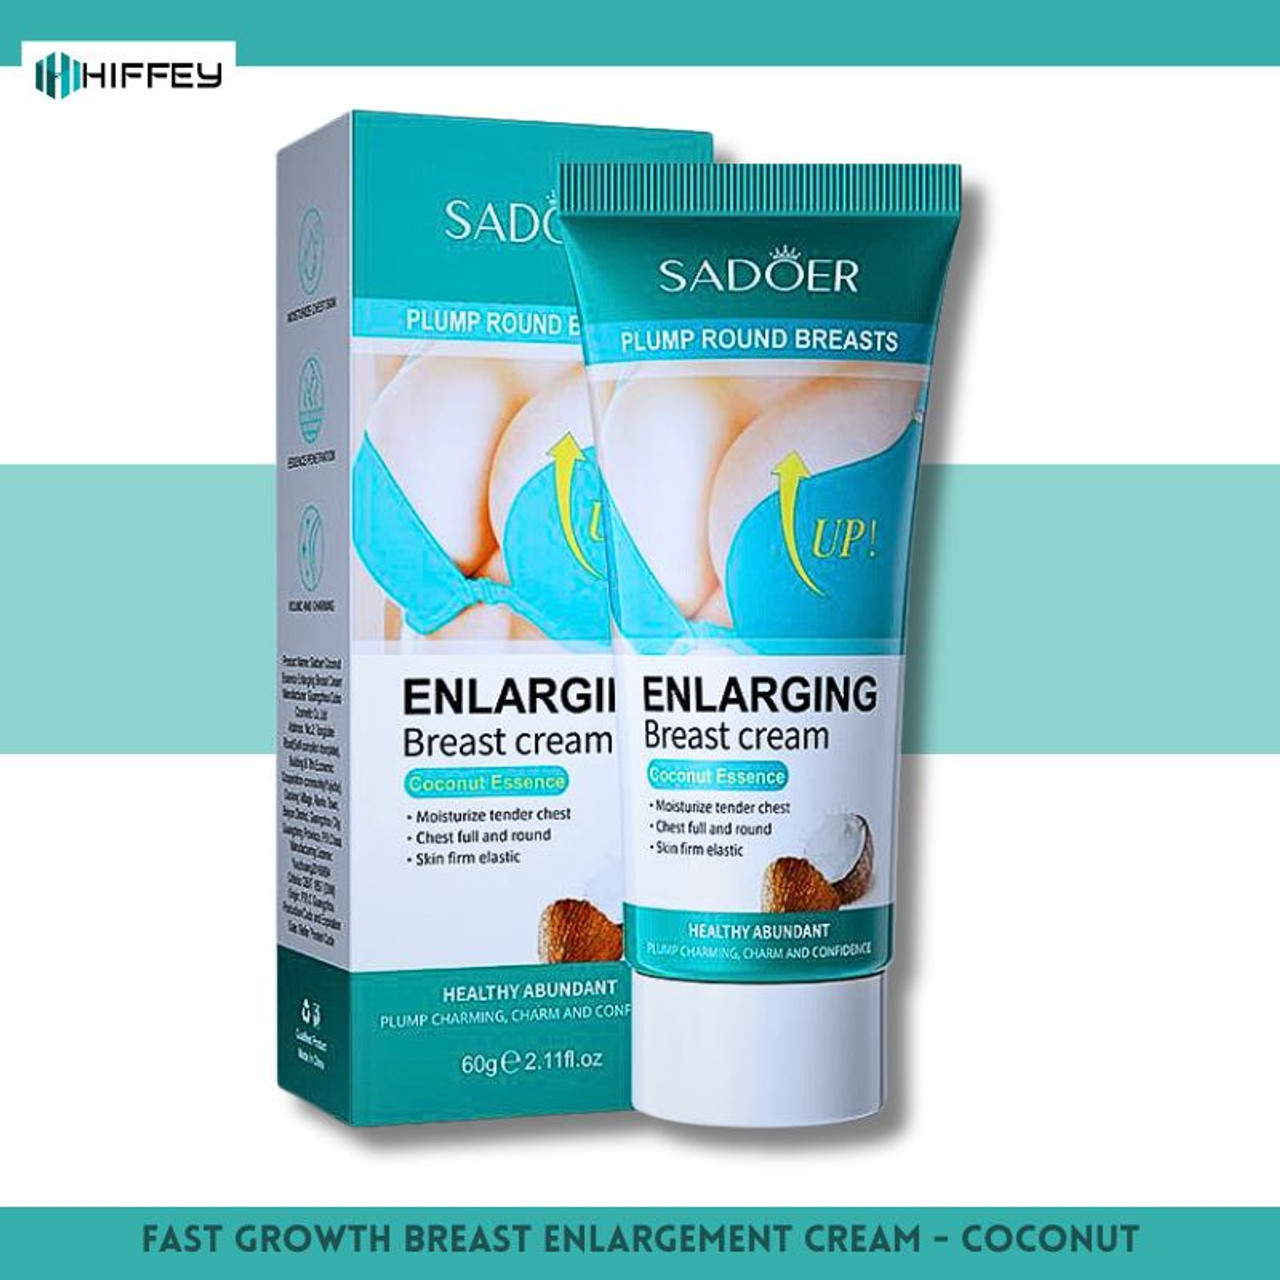 Sadoer Breast Cream – 60g: Coconut Essence for Enlarging